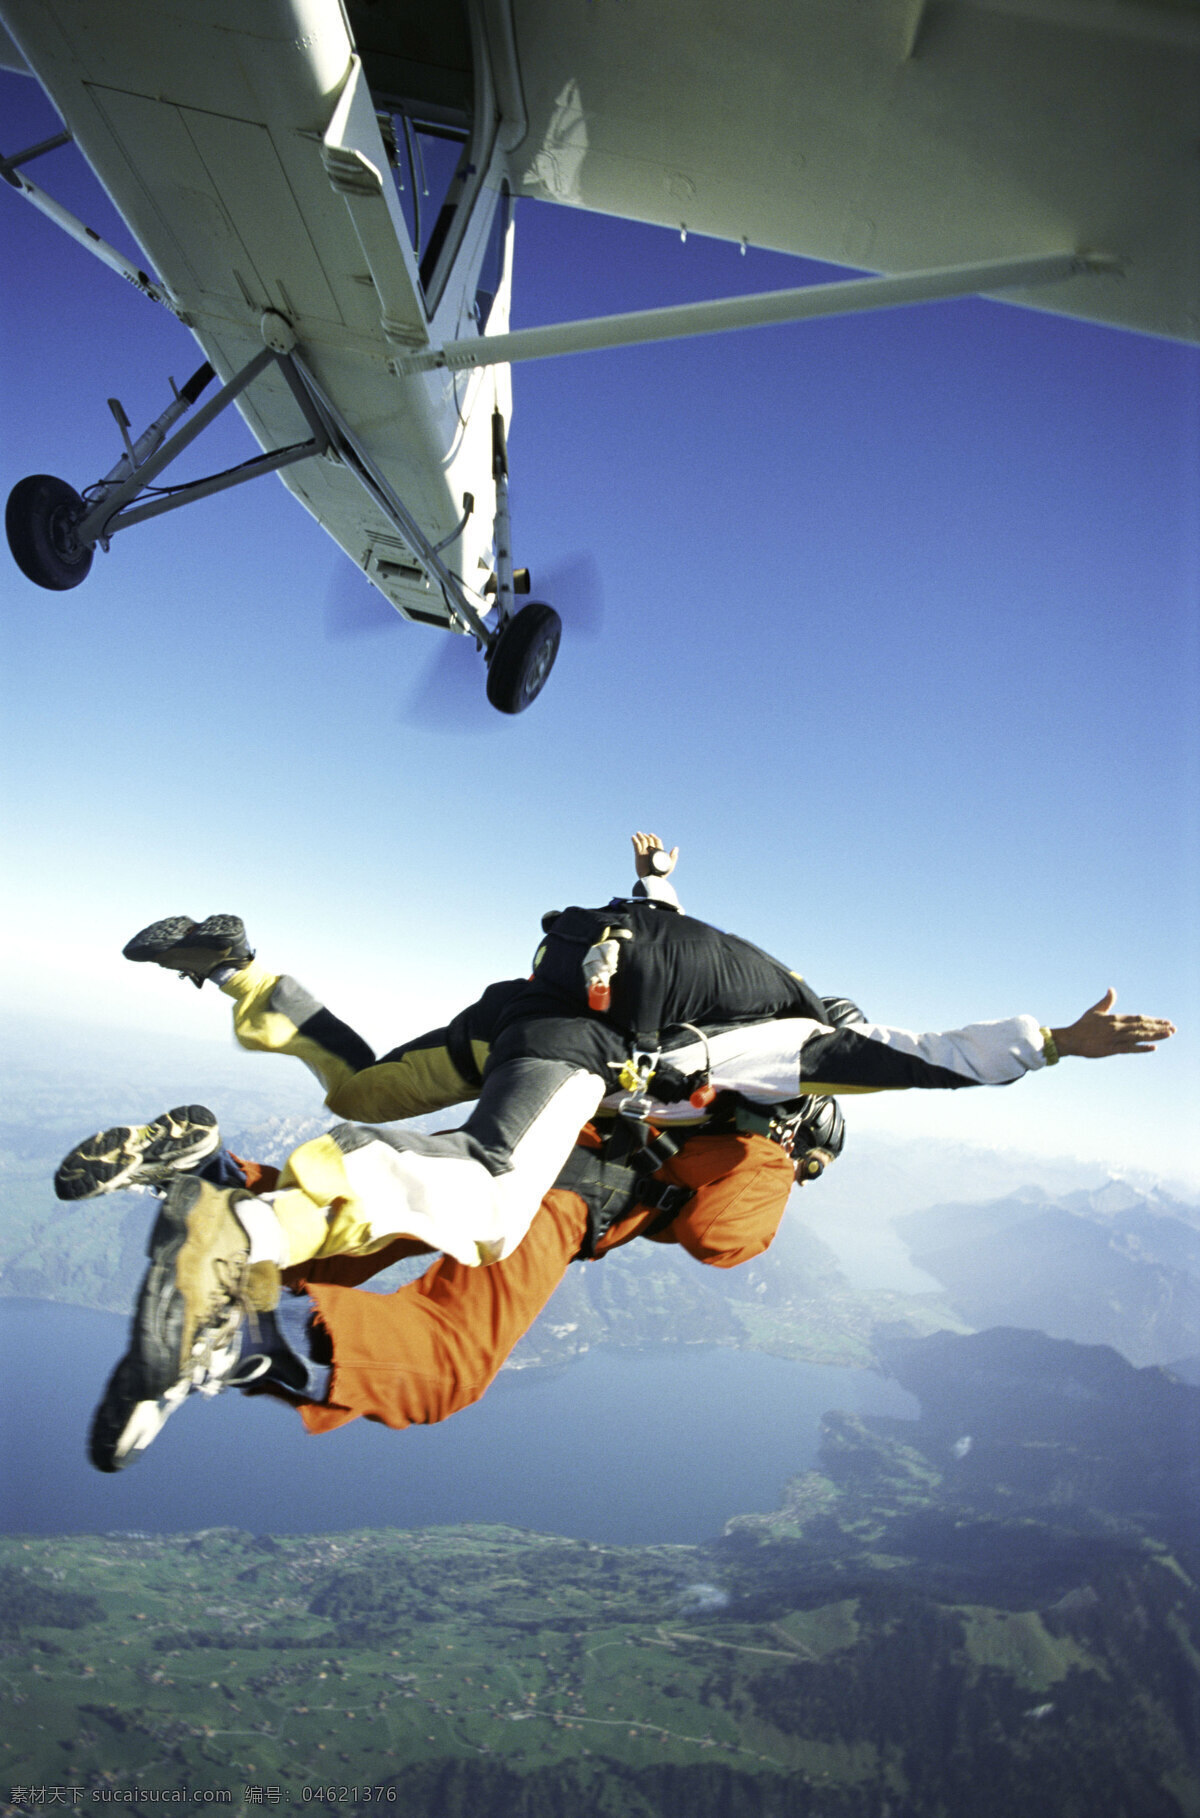 跳伞运动 跳伞 高空跳伞 高空飞行 极限运动 挑战极限 高空飞翔 冒险 团队 协作 合作 远山 山脉 体育运动 文化艺术